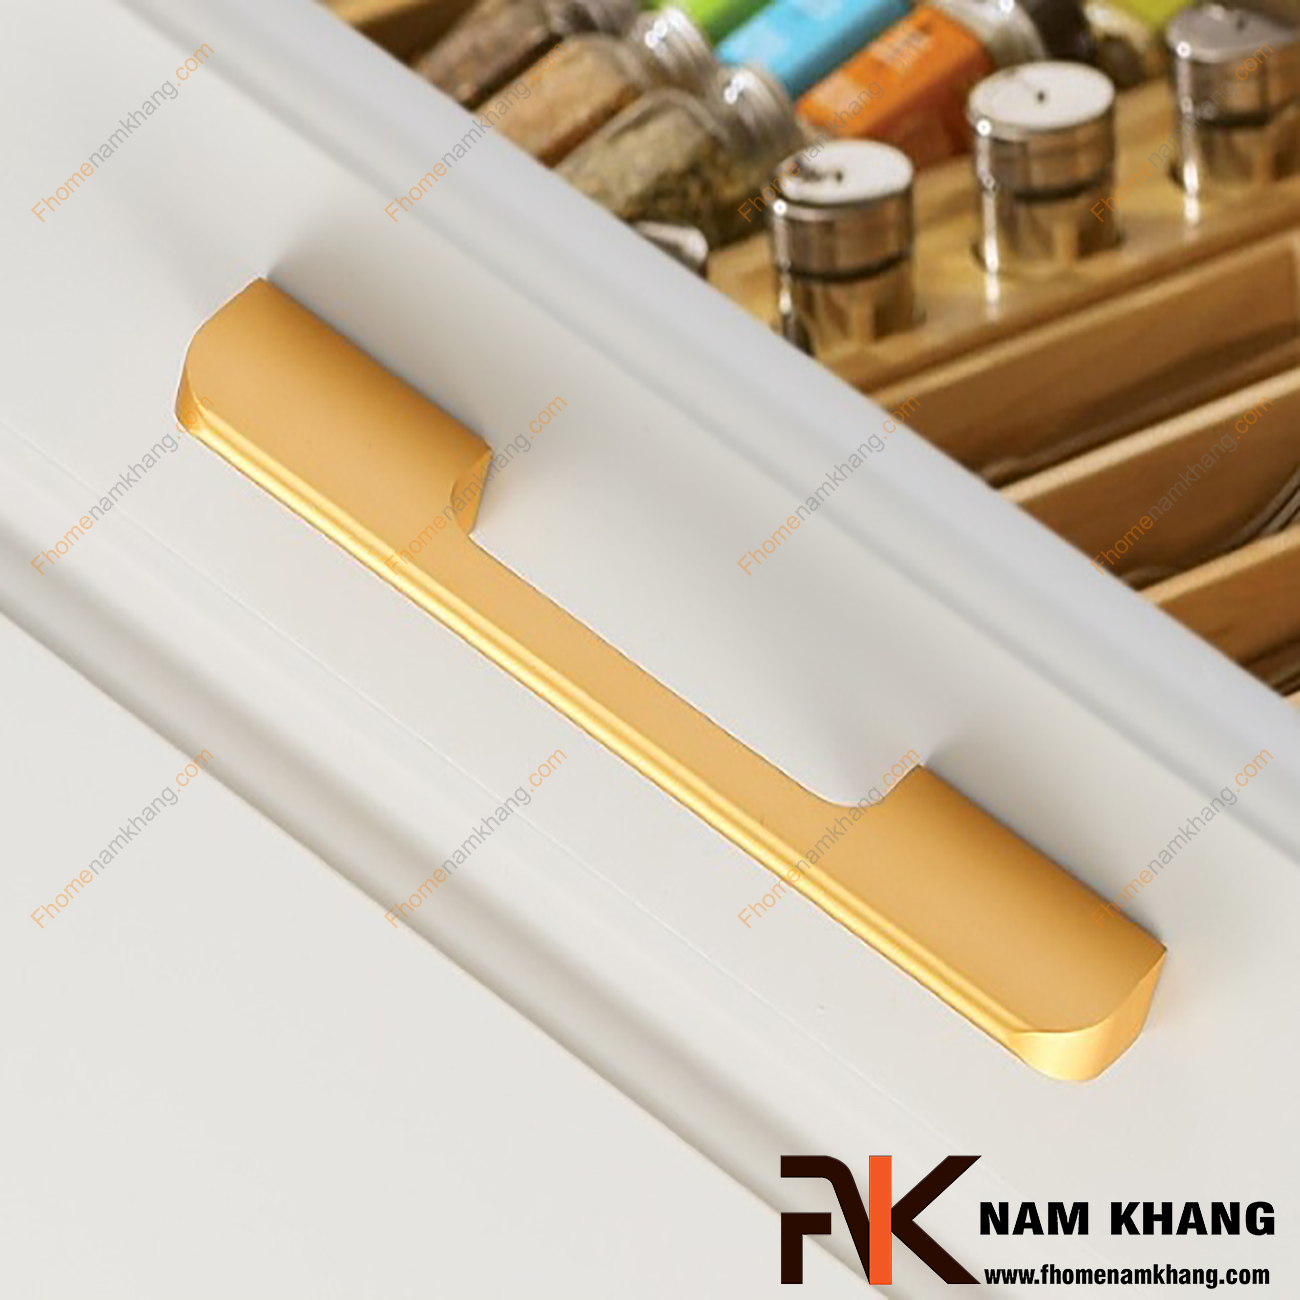 Tay nắm tủ quần áo màu vàng NK235 là một dòng tay nắm tủ theo bộ với nhiều kích thước được sử dụng trên một hoặc nhiều loại phong cách tủ khác nhau tùy nhu cầu thiết kế